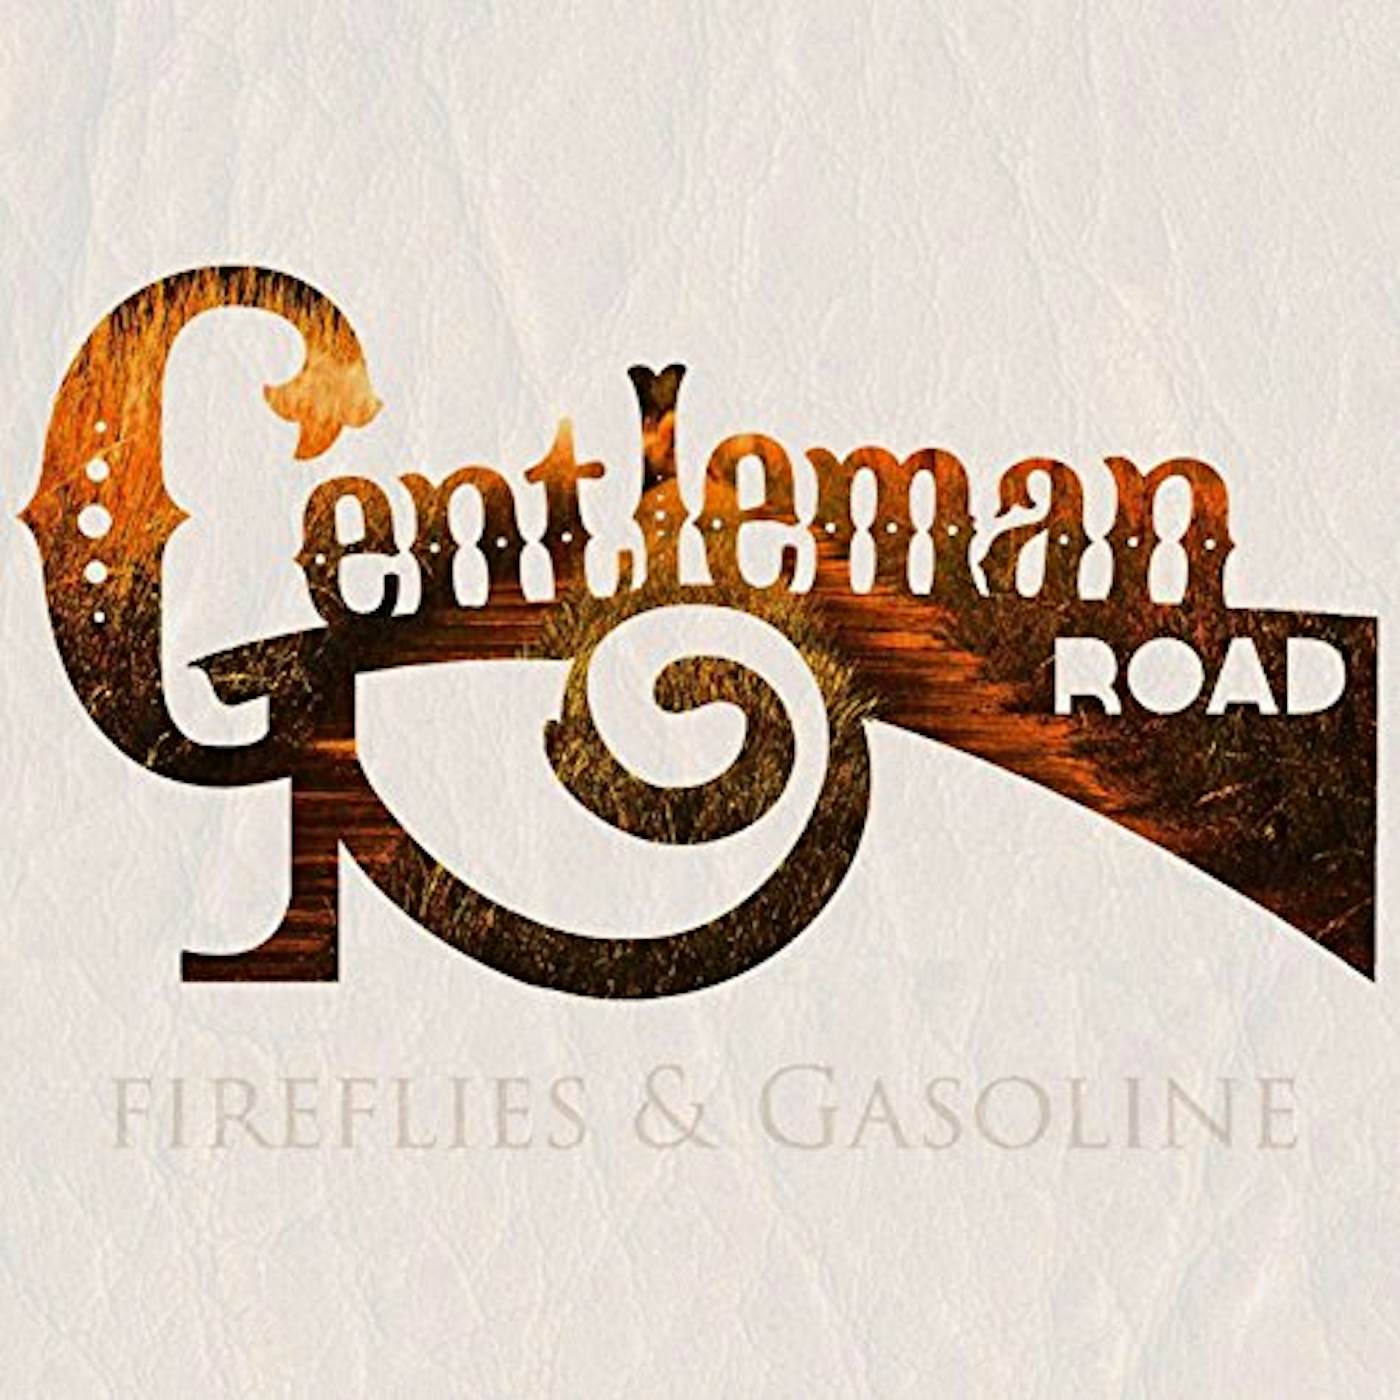 Gentleman Road FIREFLIES & GASOLINE CD